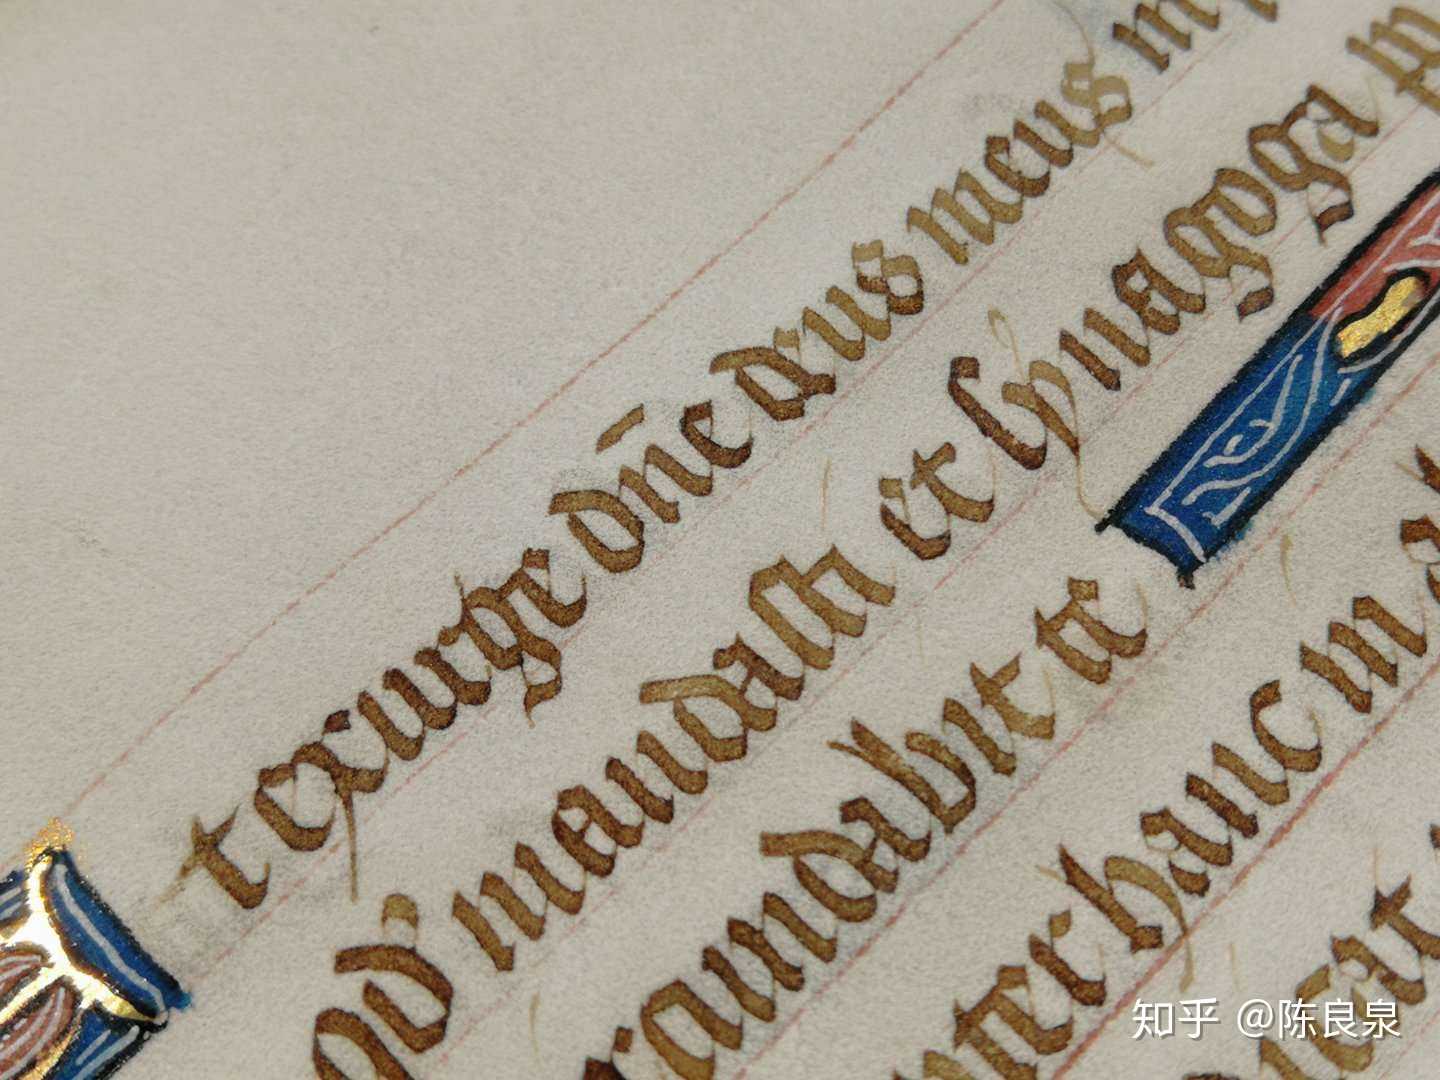 约1430年法国巴黎抄制的《圣经·诗篇》内容羊皮纸单页.